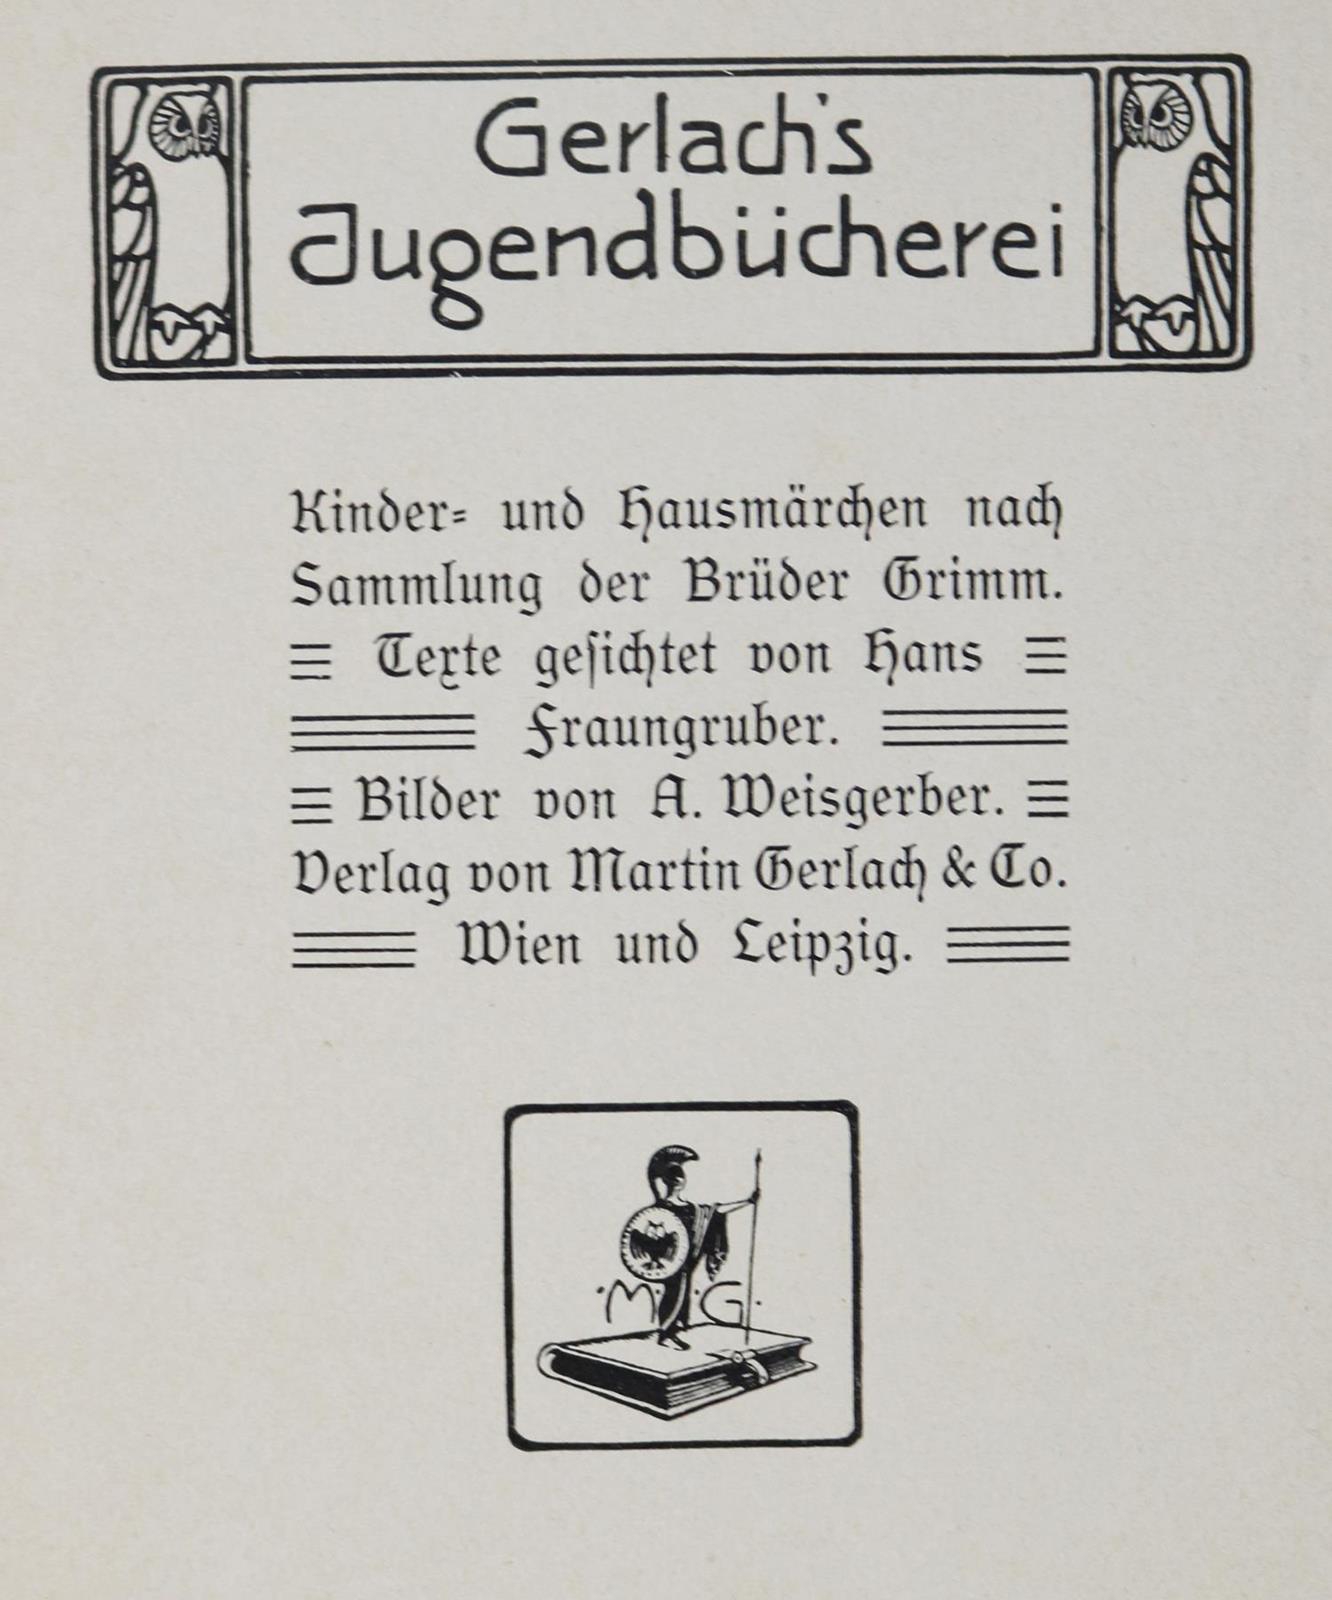 Gerlach's Jugendbücherei.